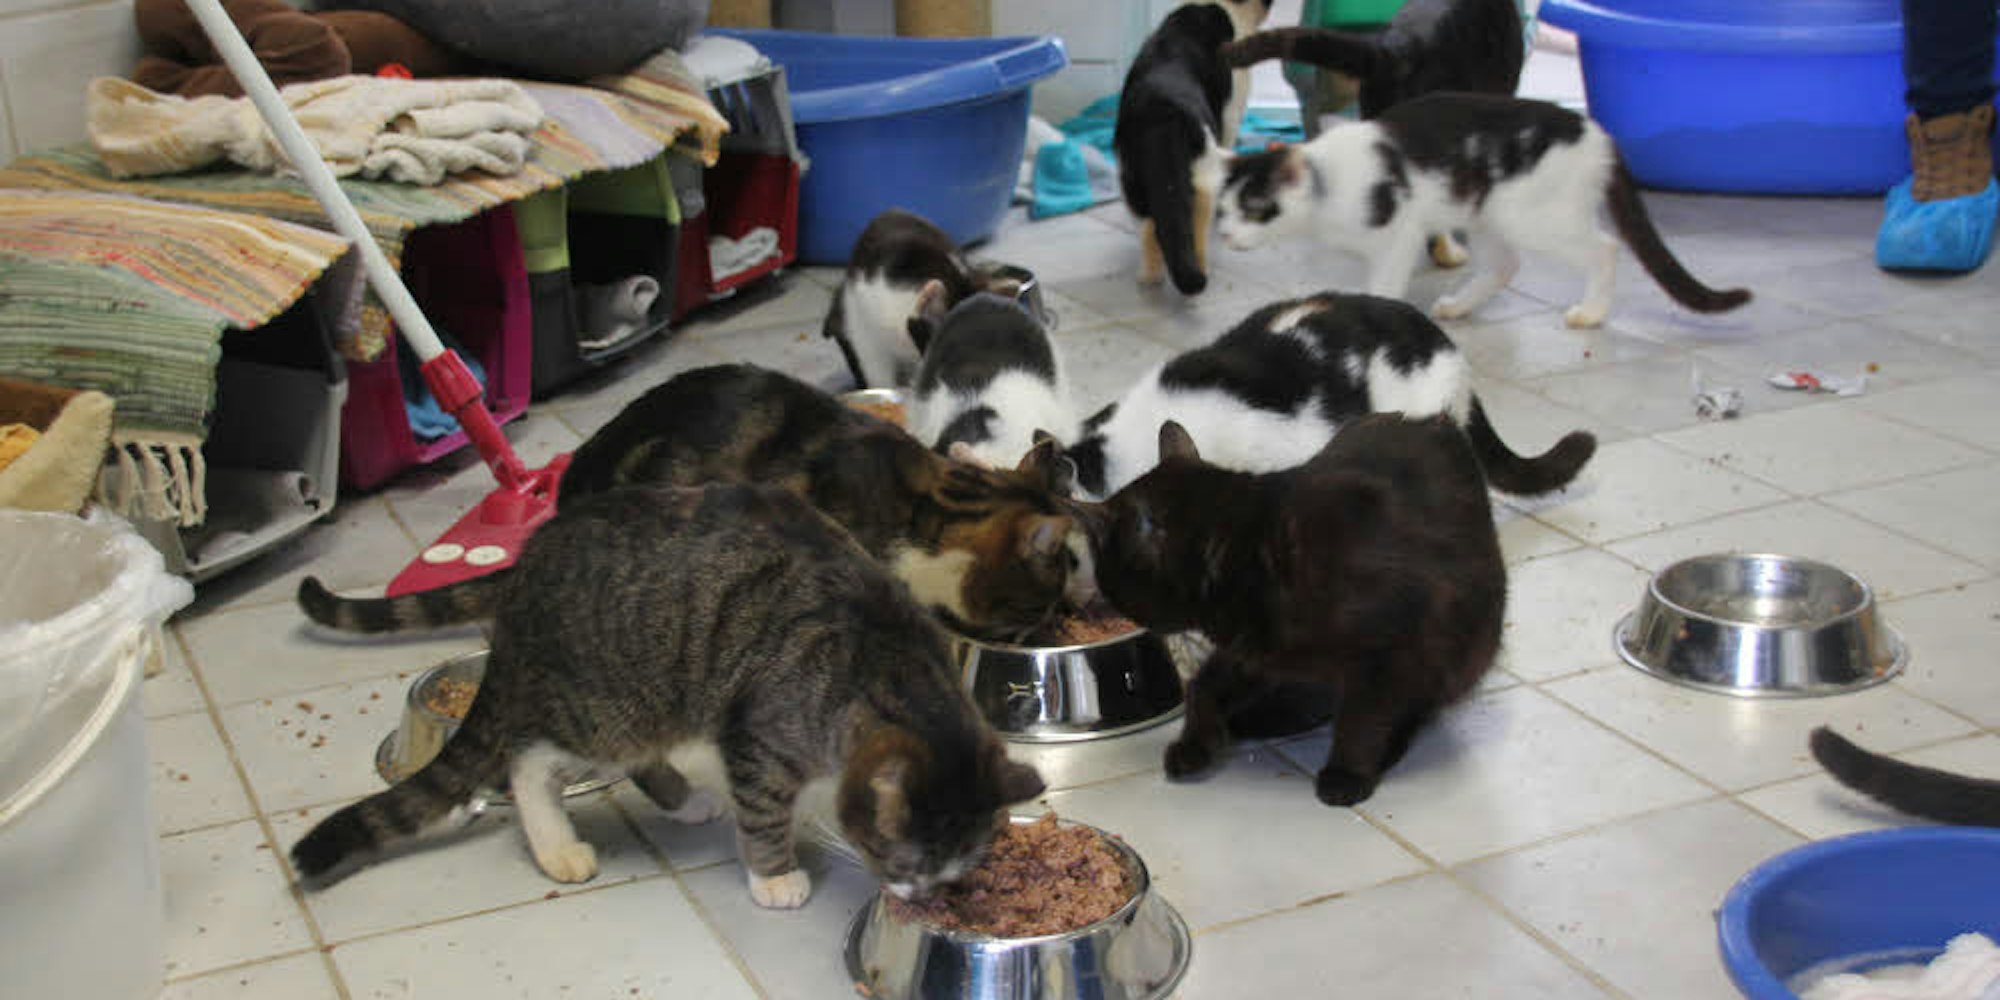 Das große Fressen. 43 Katzen verputzen beim Frühstück im Helenenhof eine ganze Menge Futter.